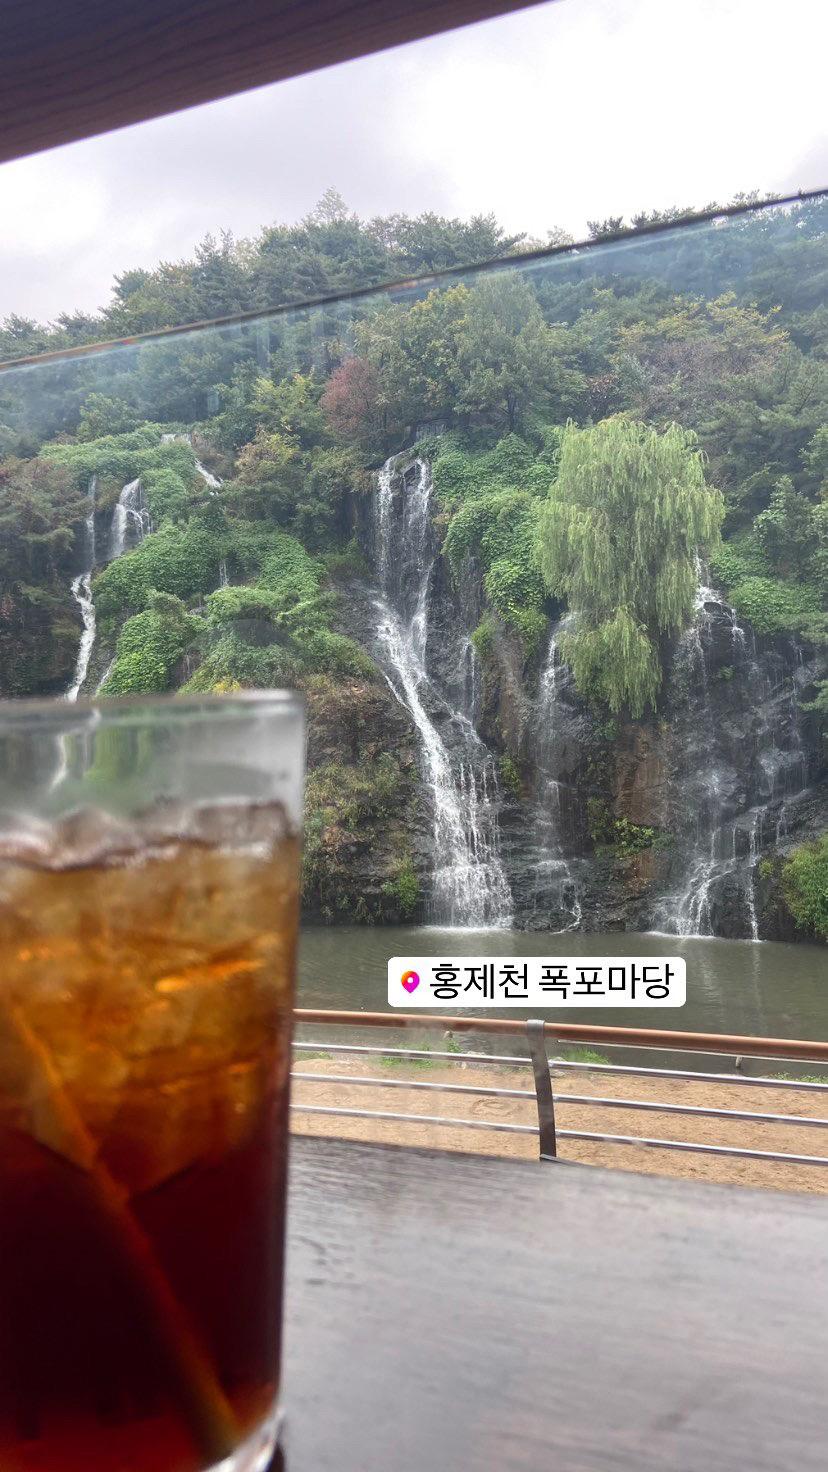 瀑布咖啡館（카페 폭포）：首爾著名的瀑布咖啡館